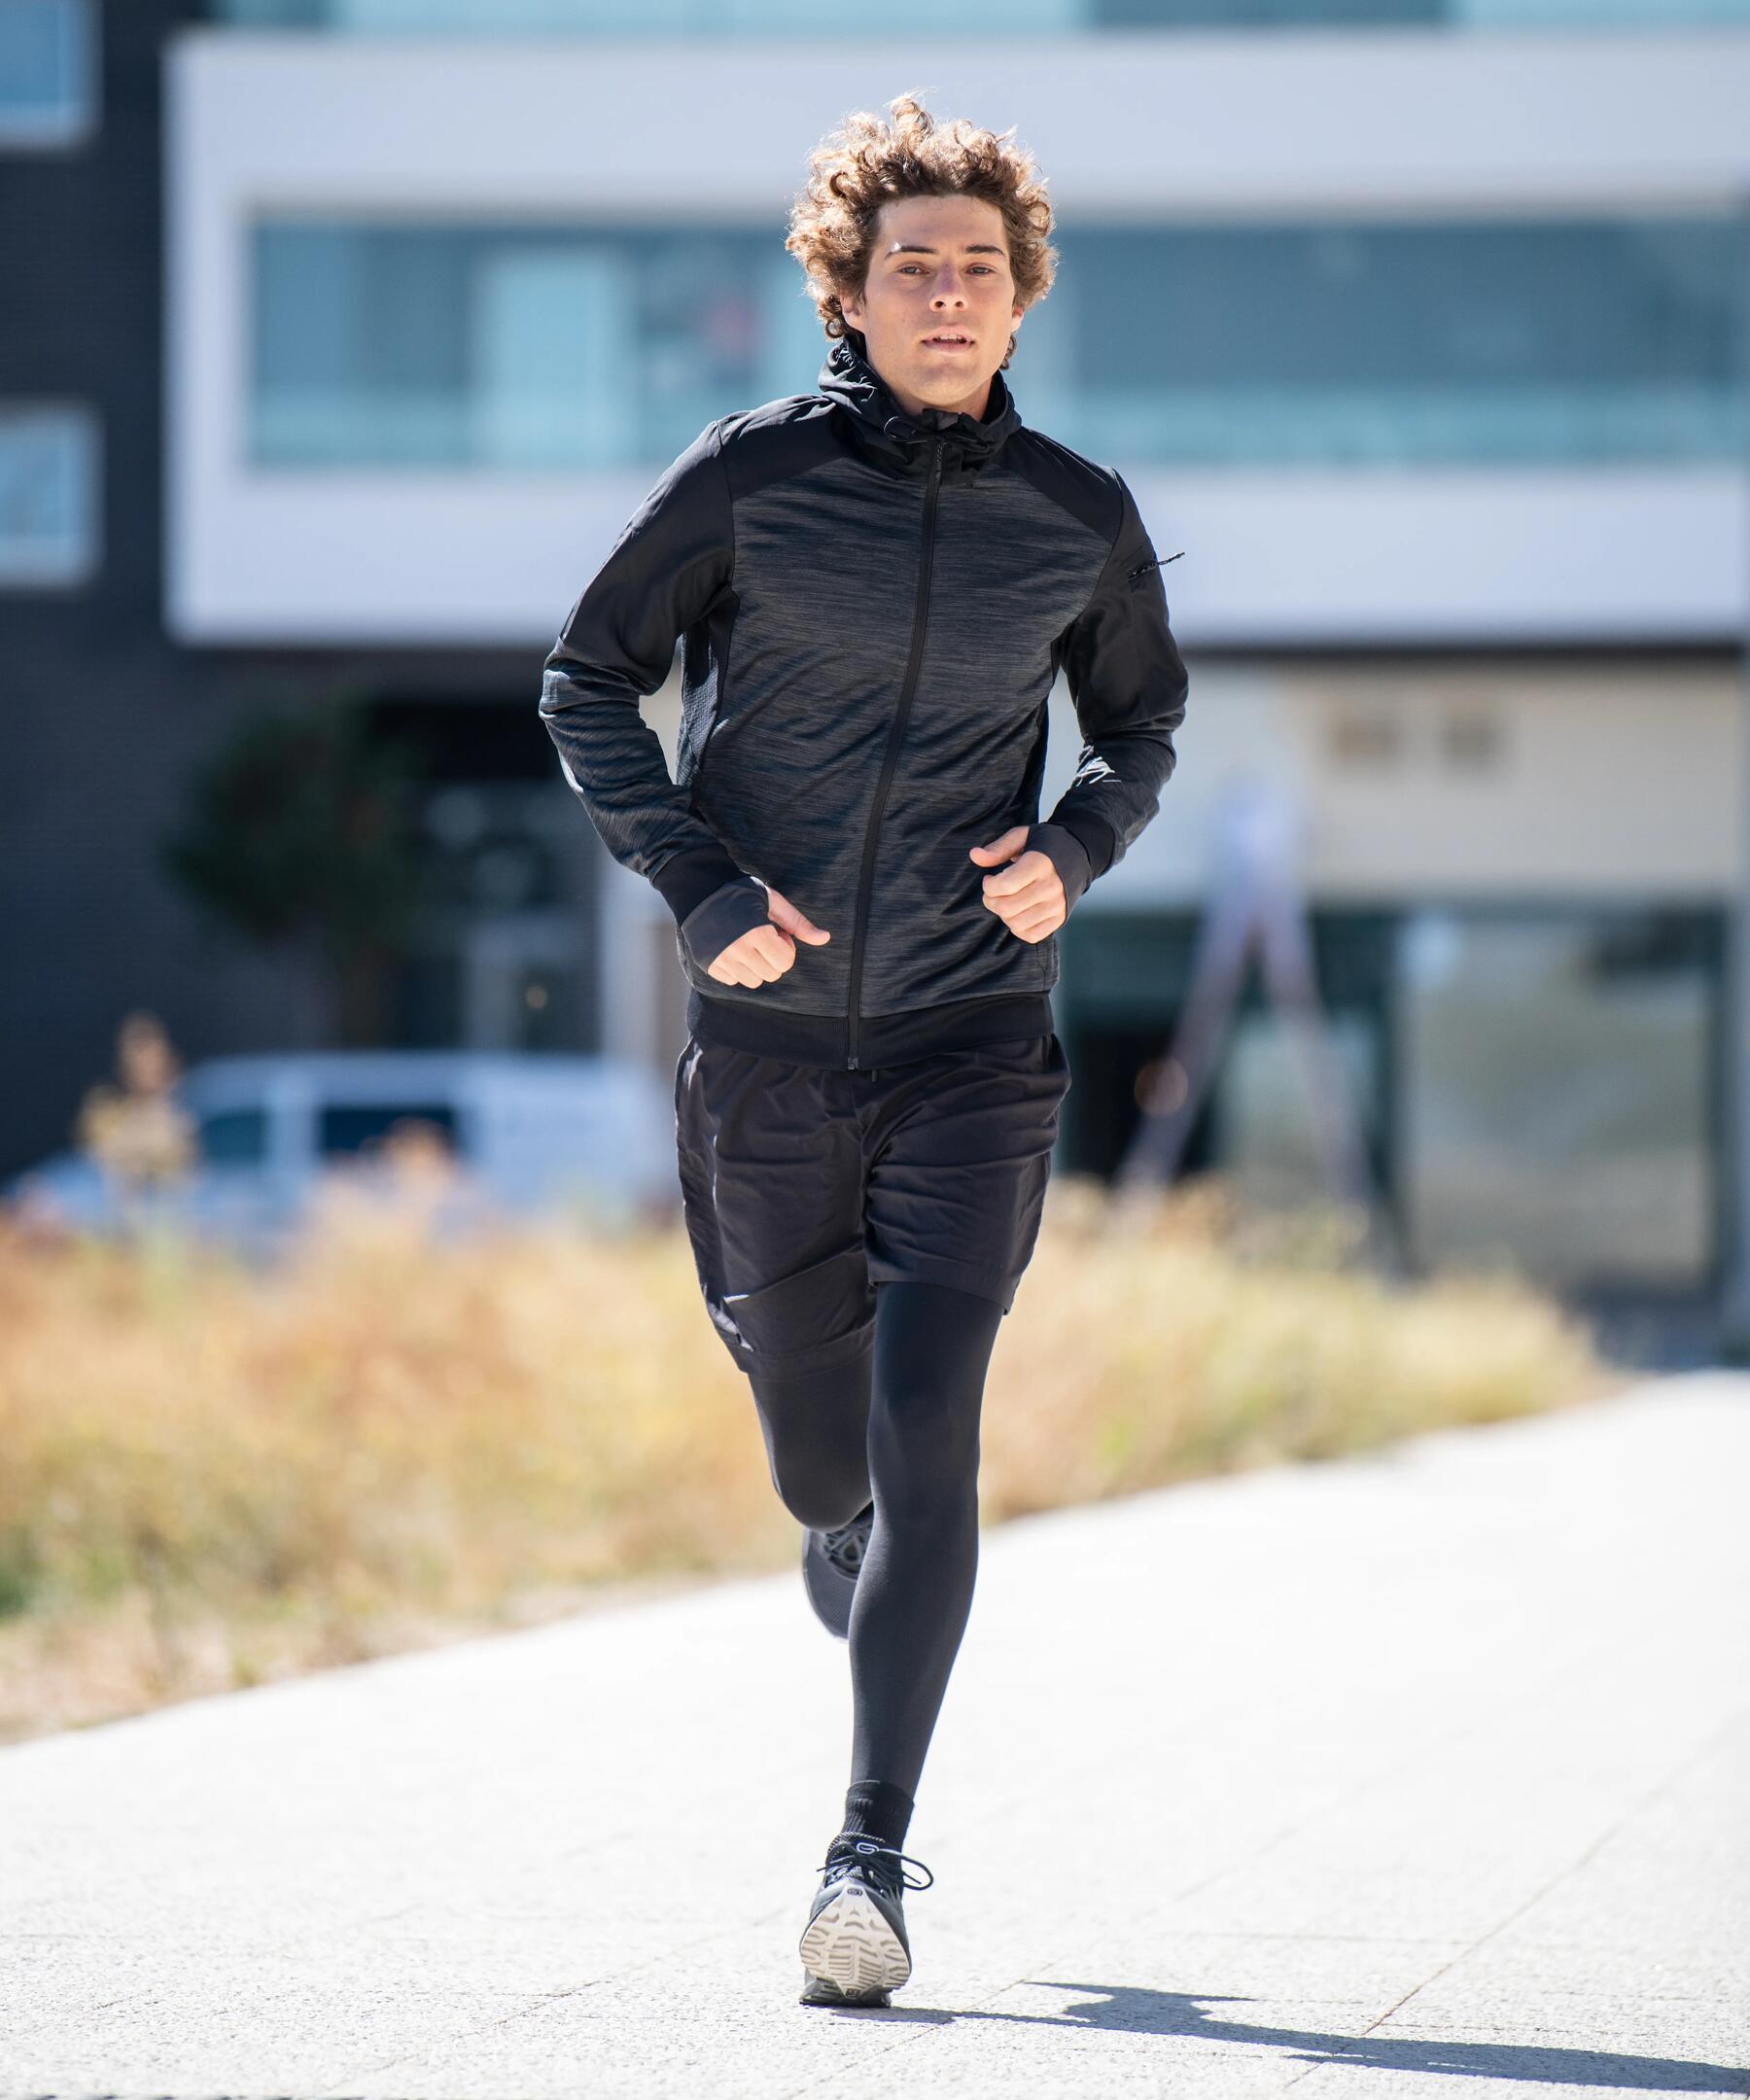 Mężczyzna w stroju biegacza biegnący przez miasto